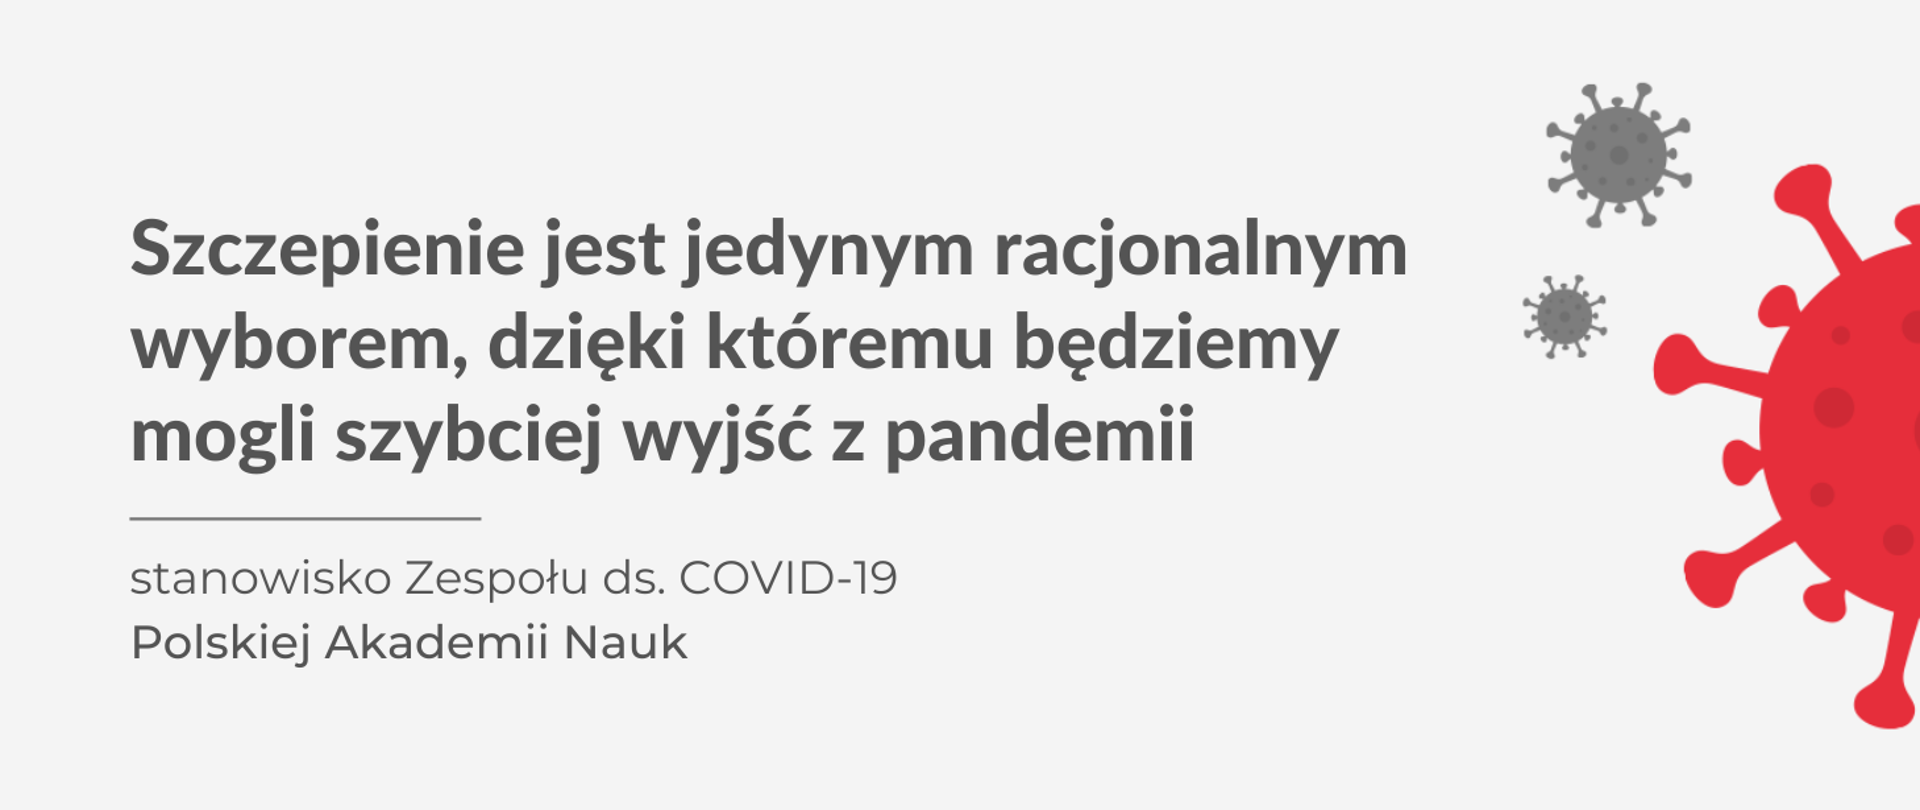 Grafika - napis Stanowisko Zespołu ds. COVID-19 Polskiej Akademii Nauk i obrazek koronawirusa.